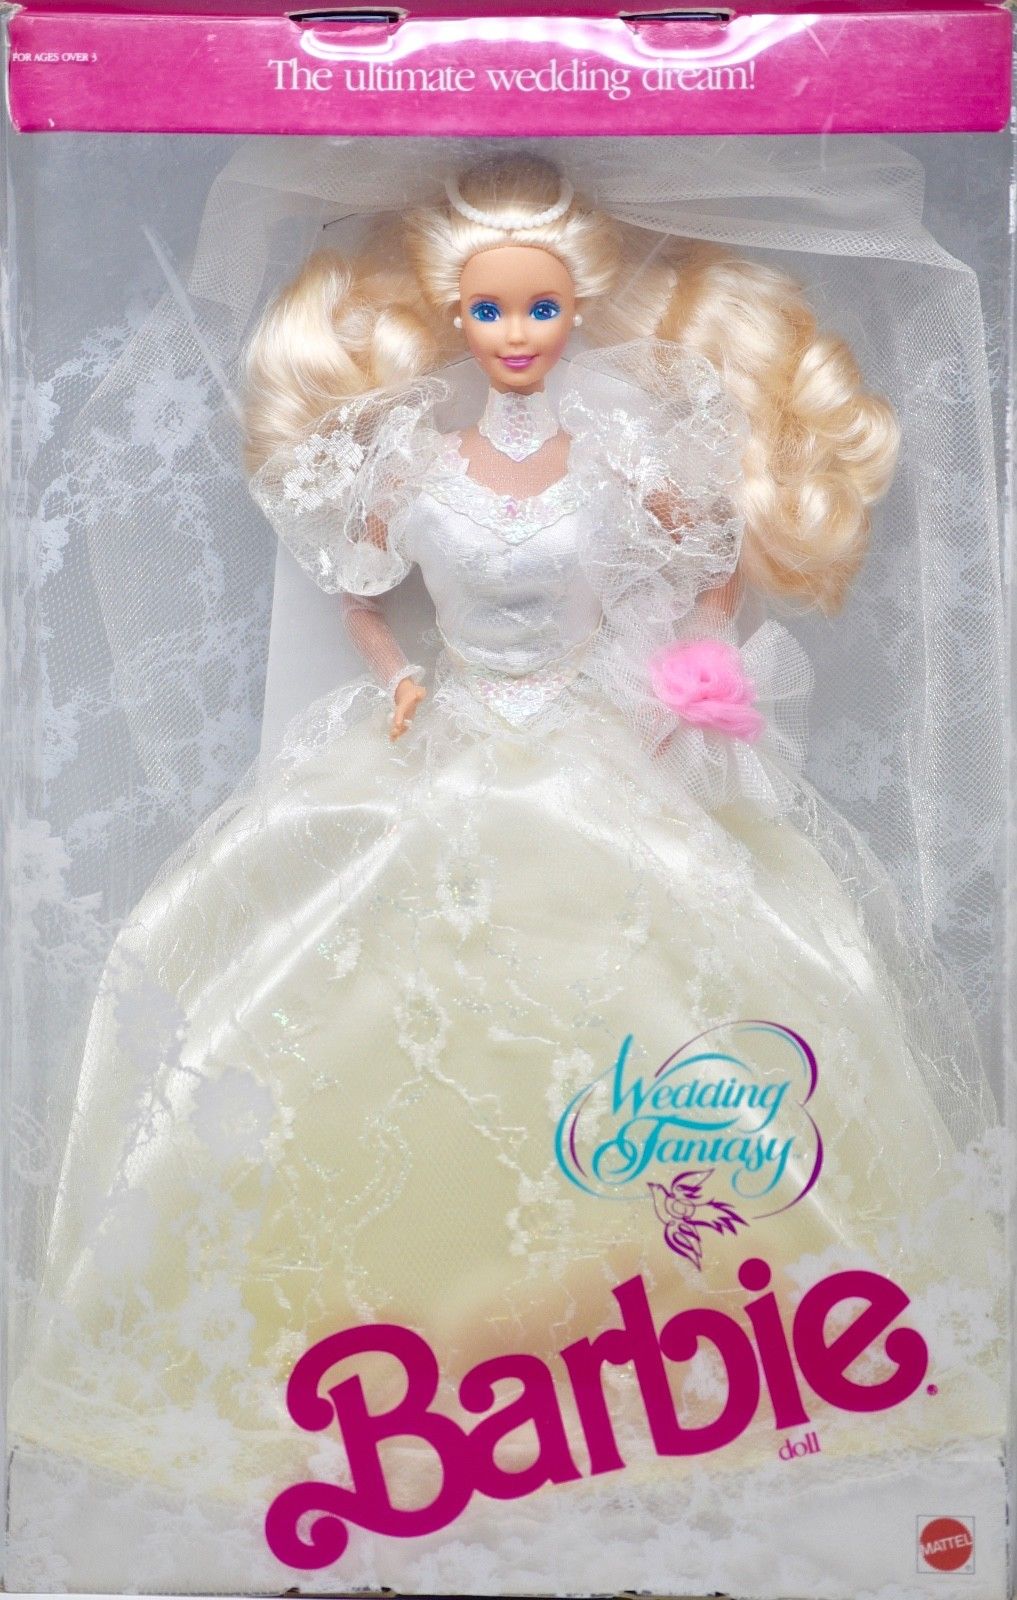 1989_wedding_fantasy_barbie.jpg